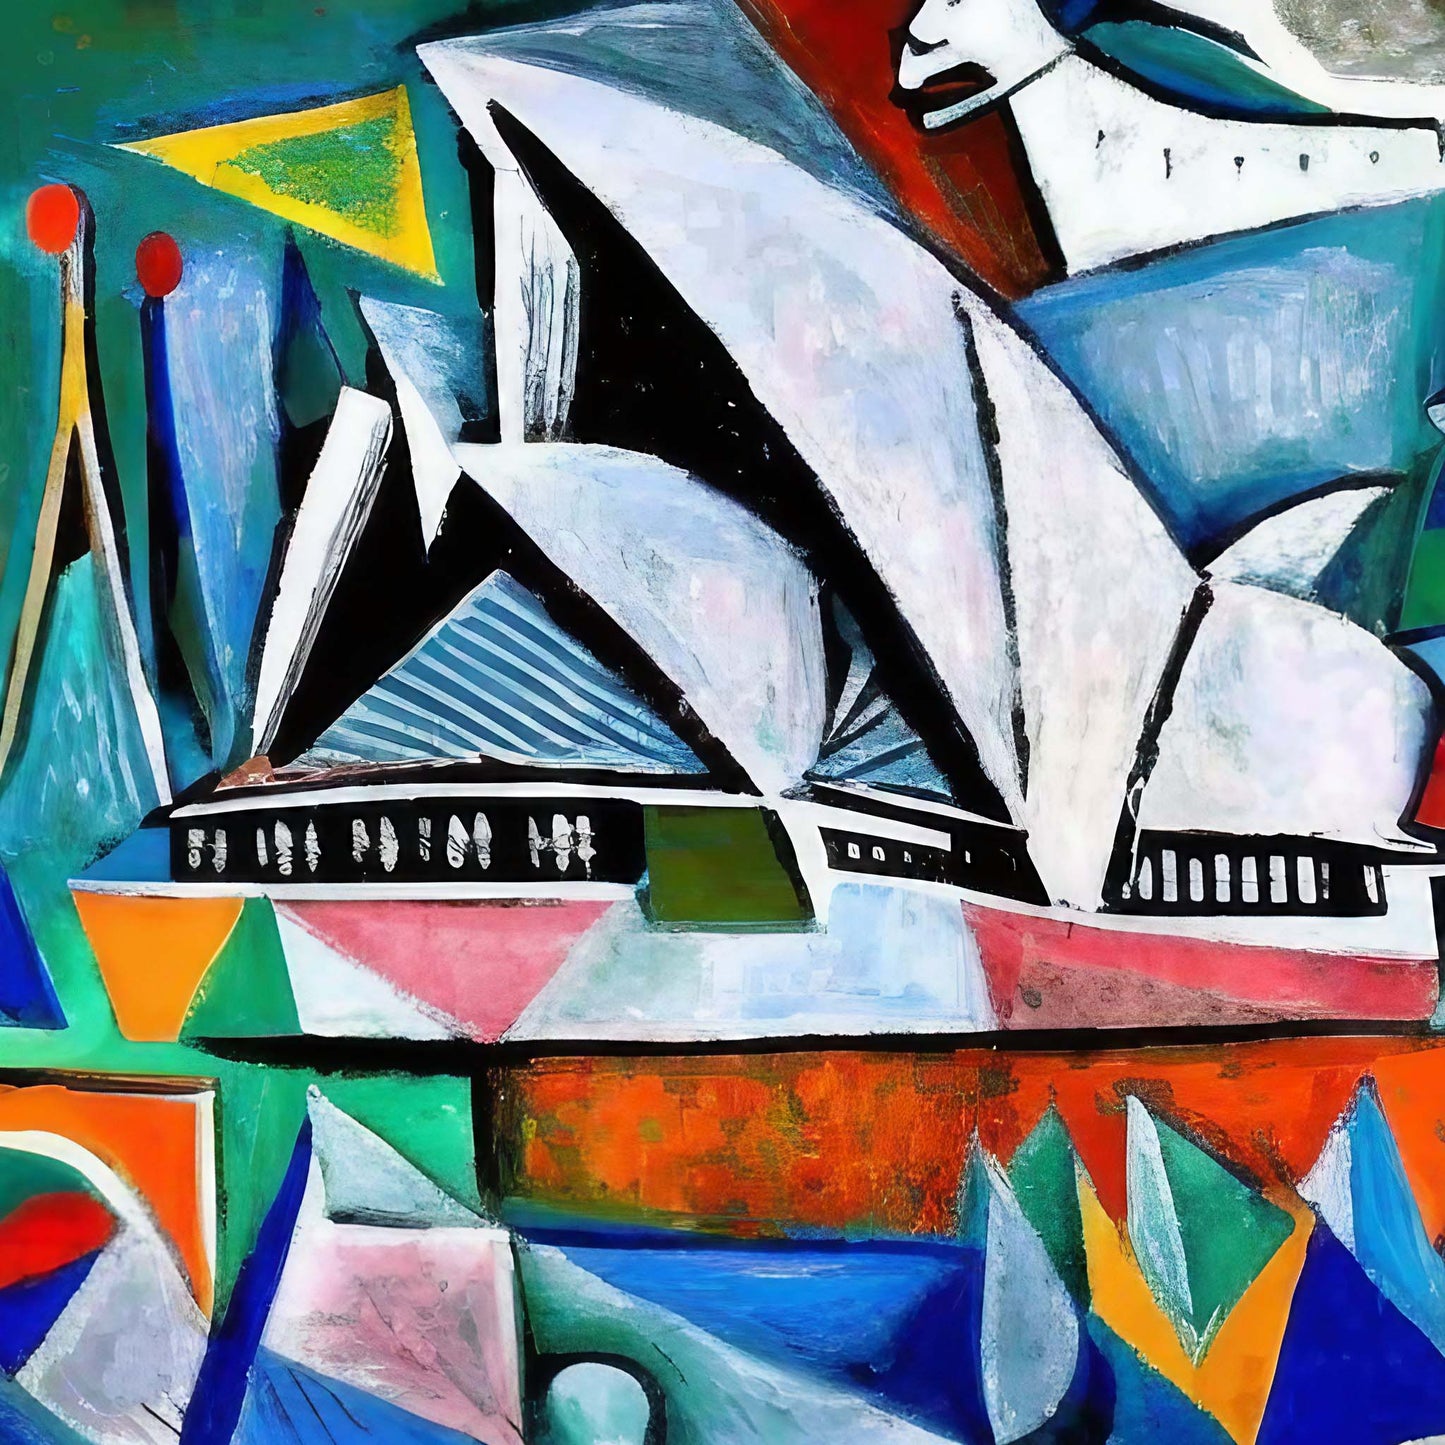 Sydney - Opera House - Wandbild in der Stilrichtung des Expressionismus